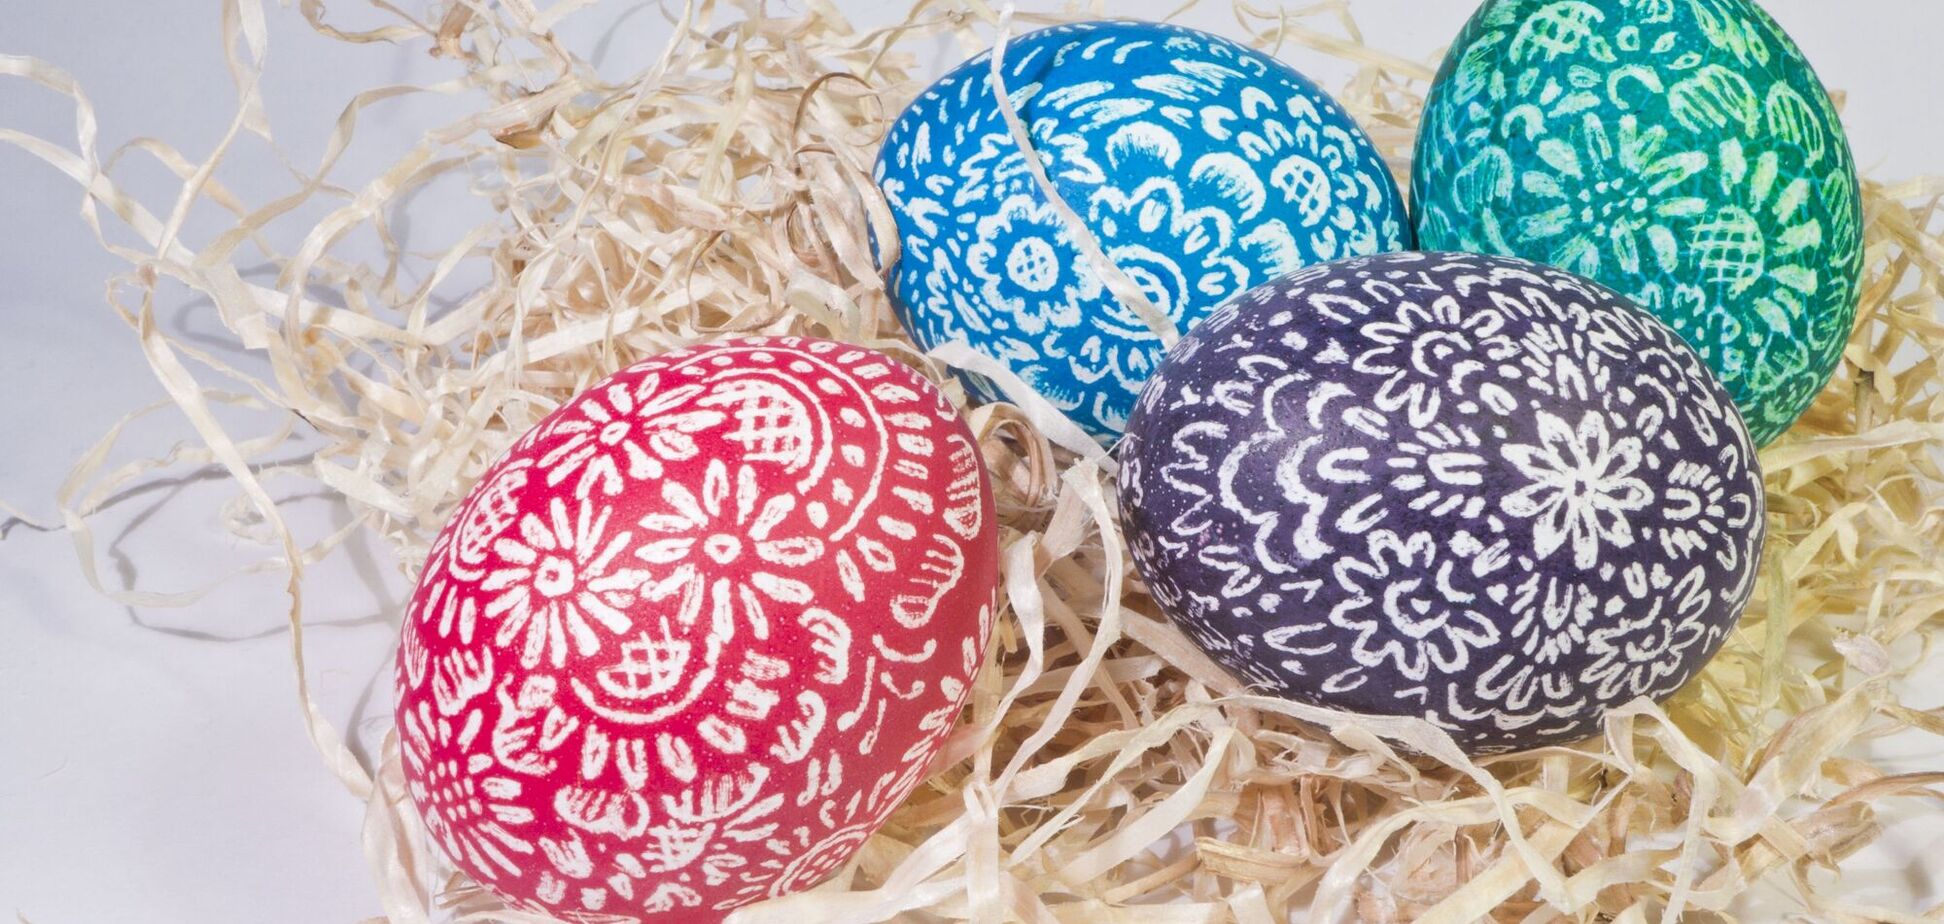 Яйце в християнстві уособлює символ труни і воскресіння